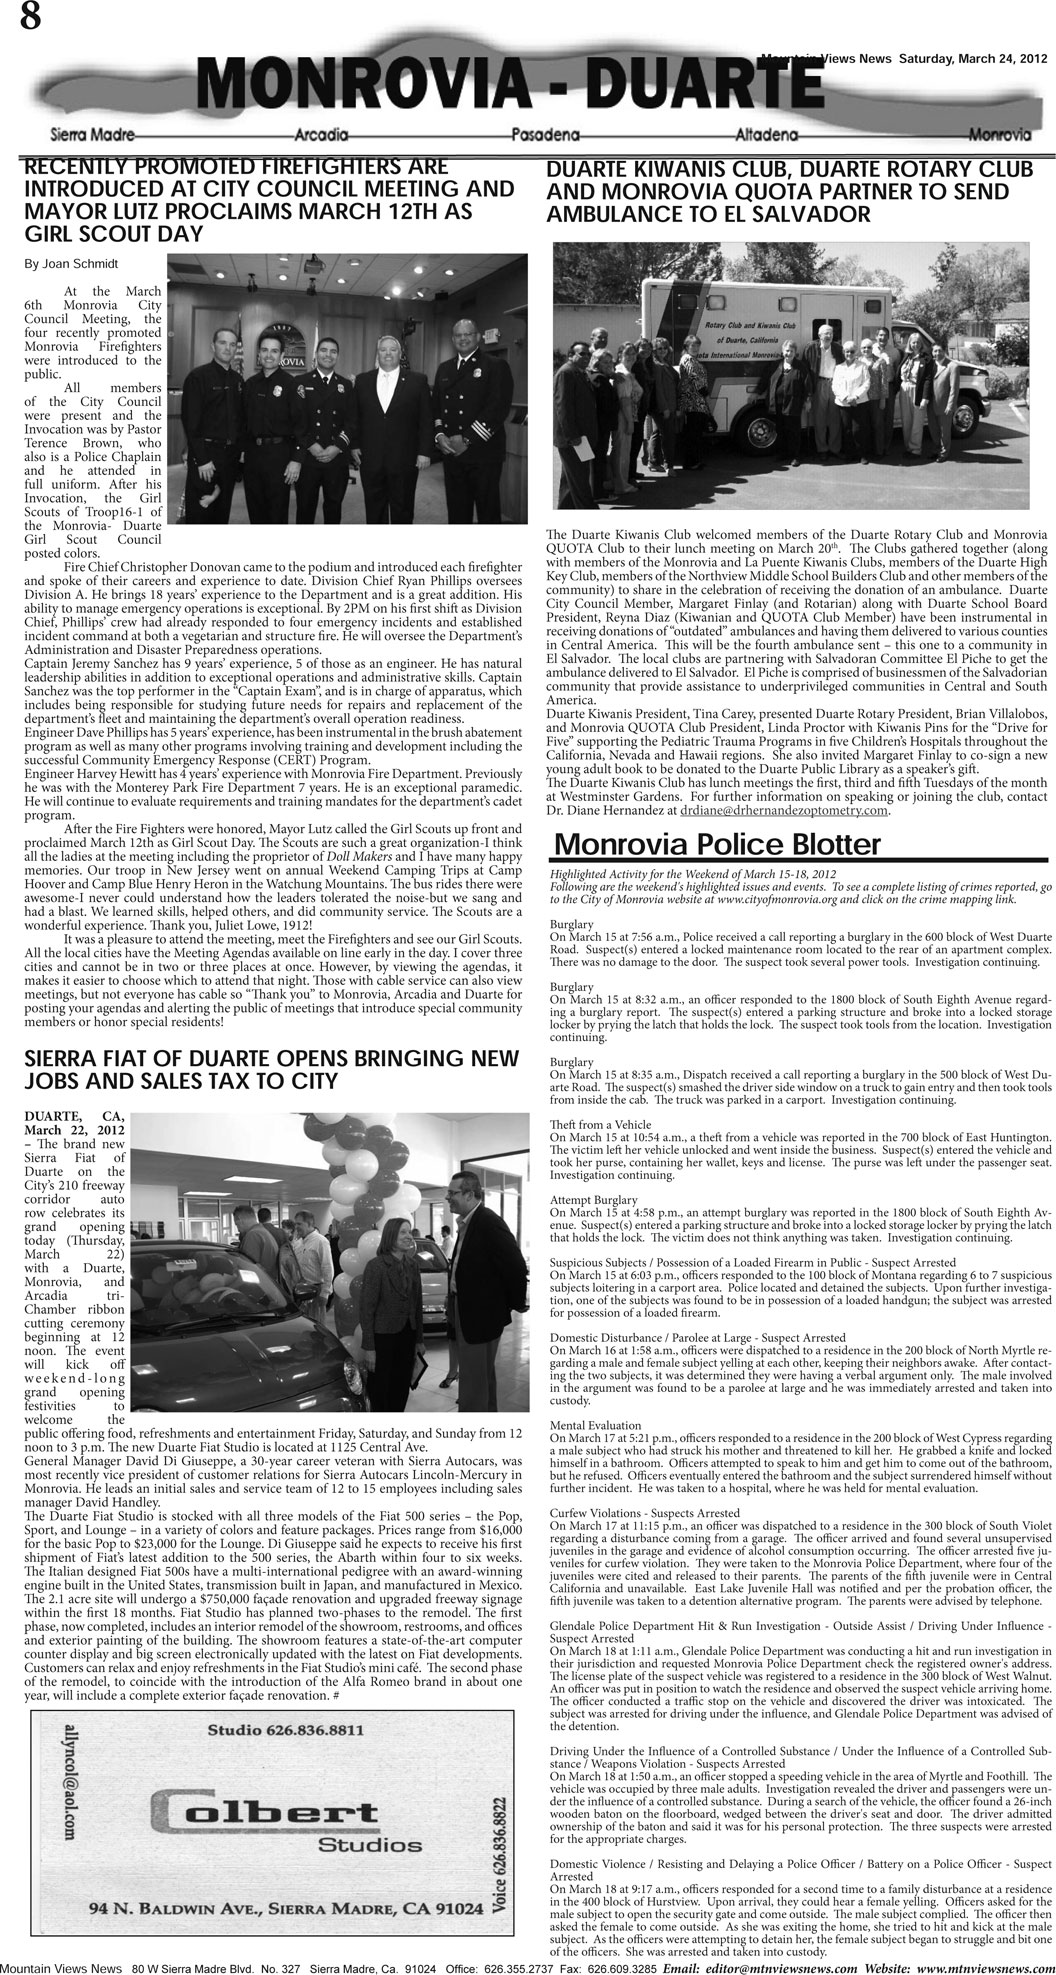 MVNews this week:  Page 8